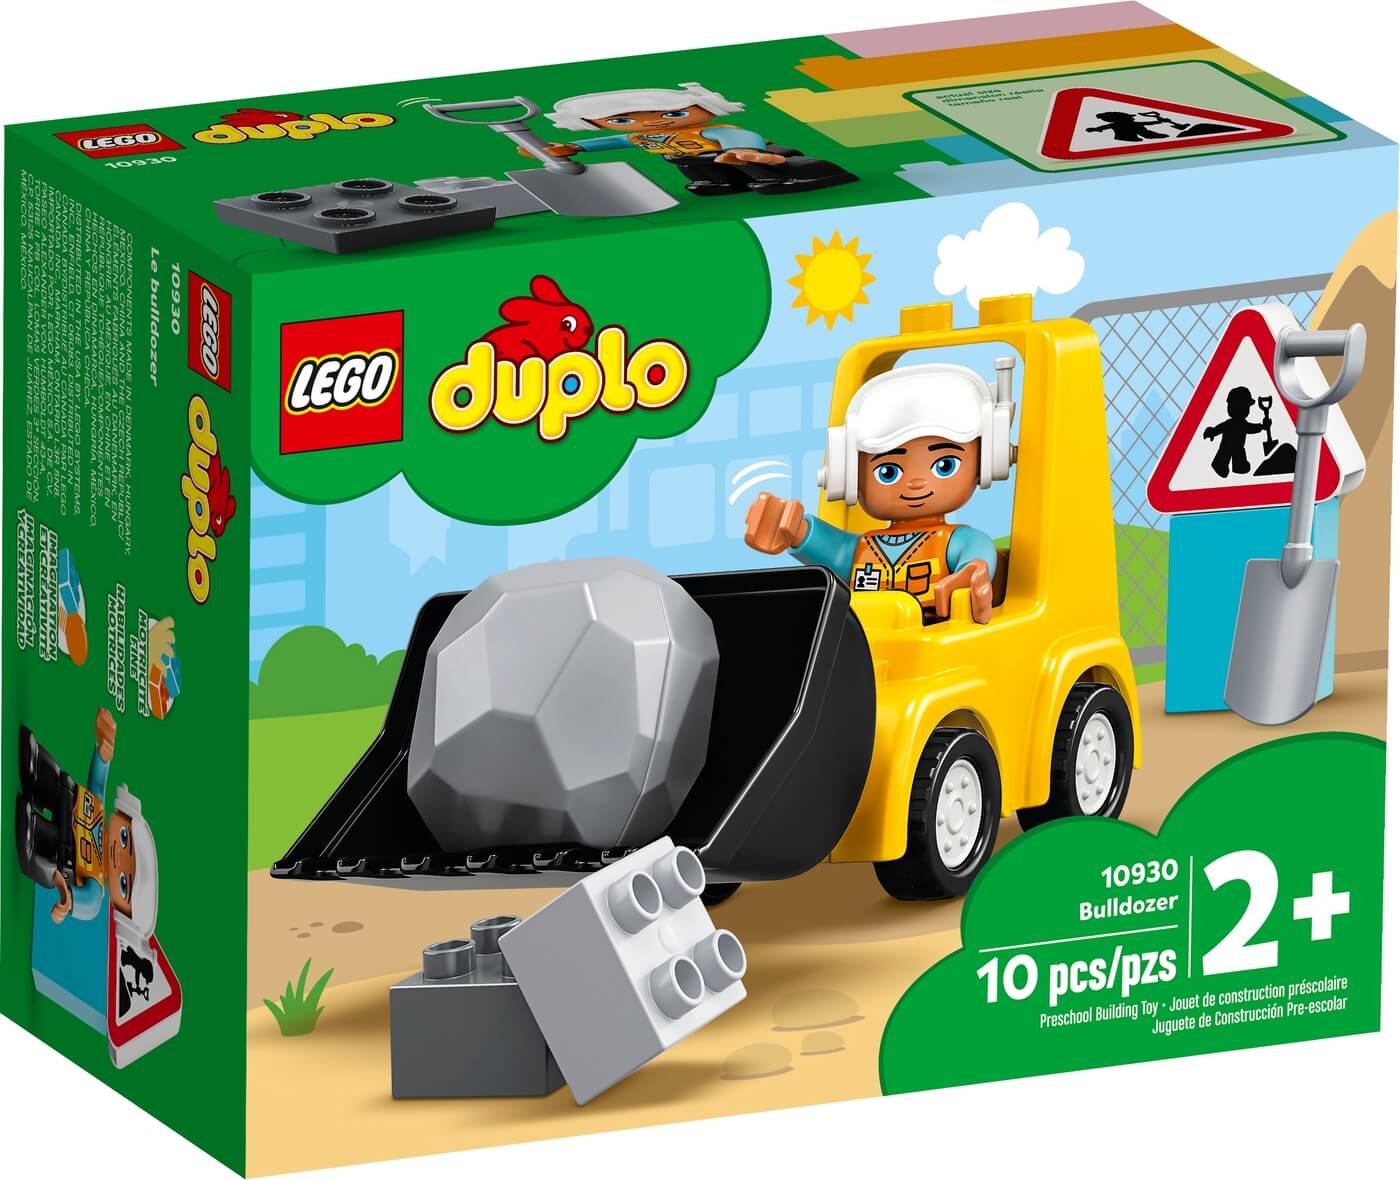 Bulldozer Duplo ( Lego 10930 ) imagen e